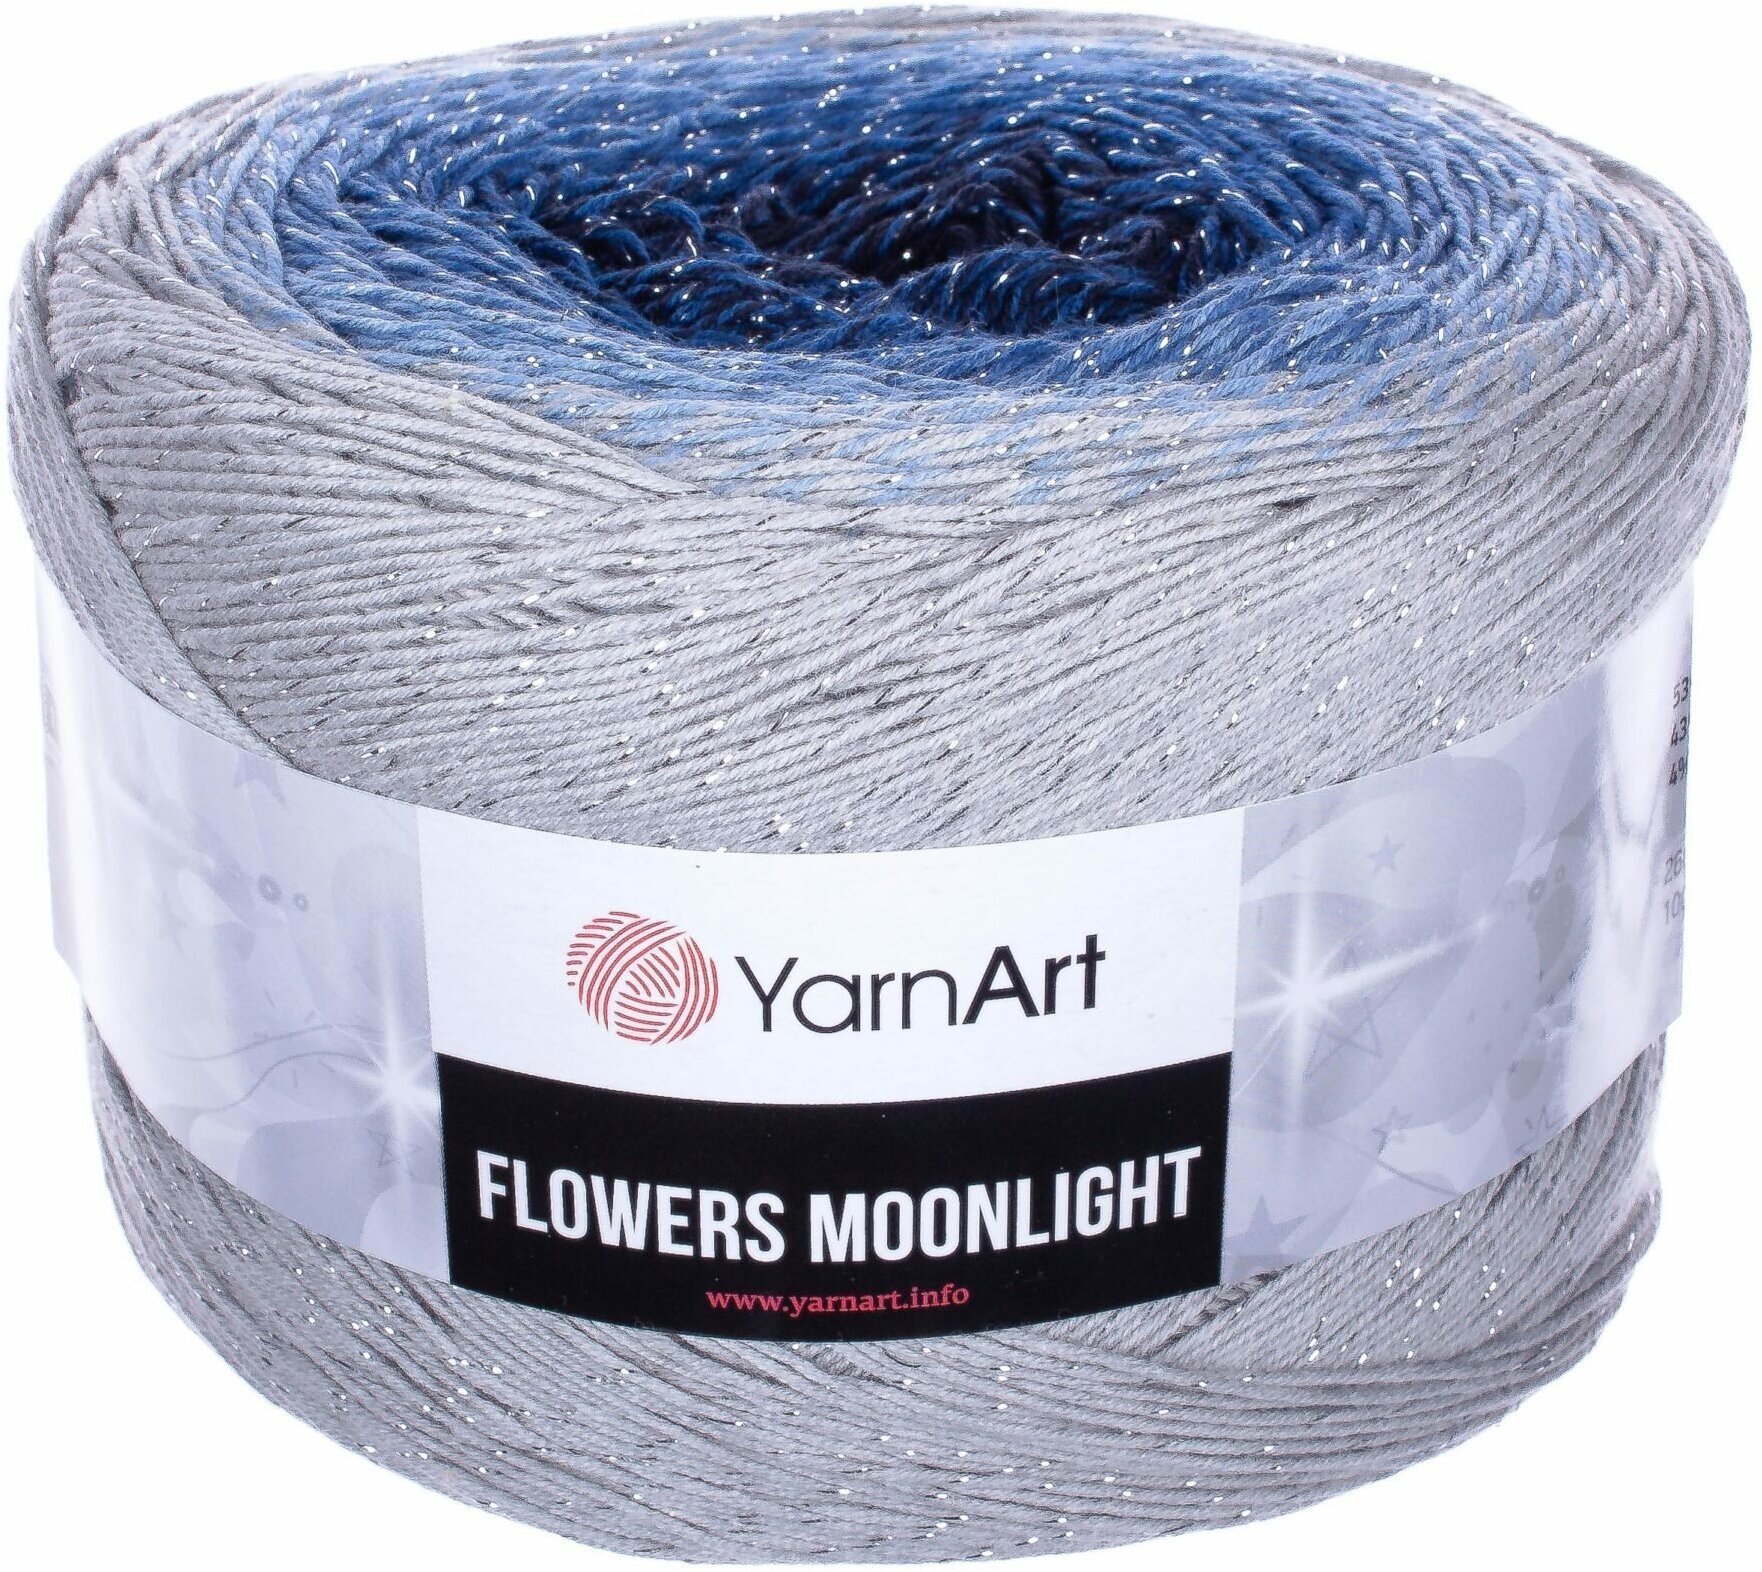 Пряжа YarnArt Flowers Moonlight св. серый-голубой-т. синий (3271), 53%хлопок/43%акрил/4%металлик, 1000м, 260г, 2шт